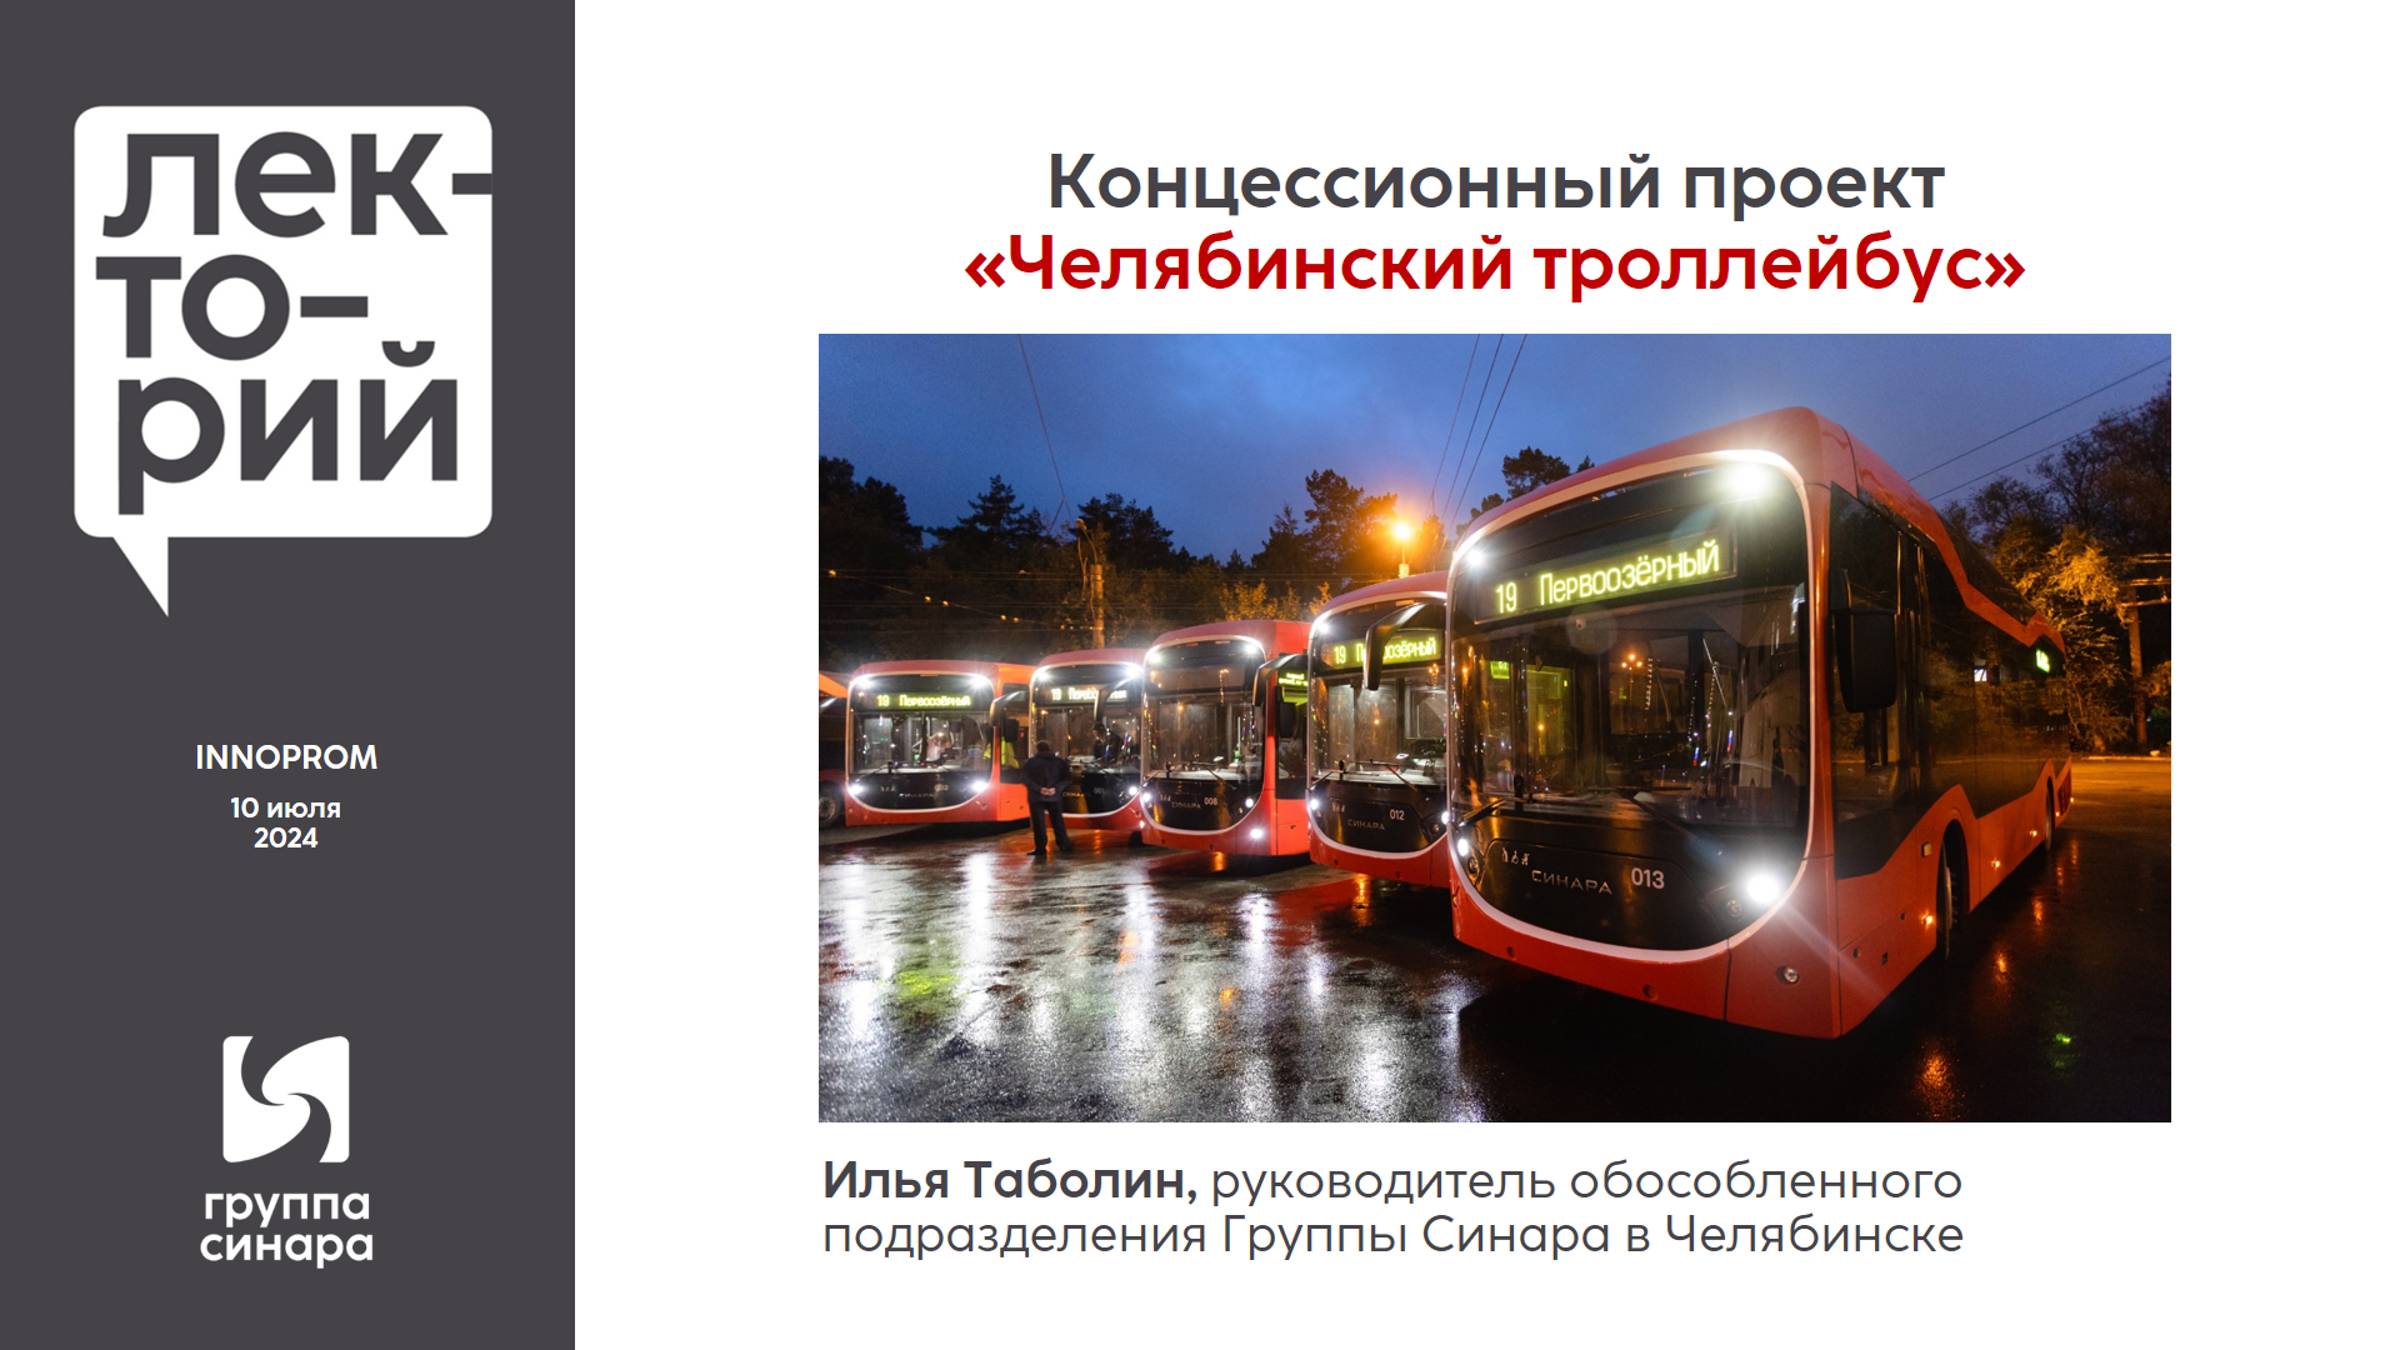 Концессионный проект «Челябинский троллейбус»